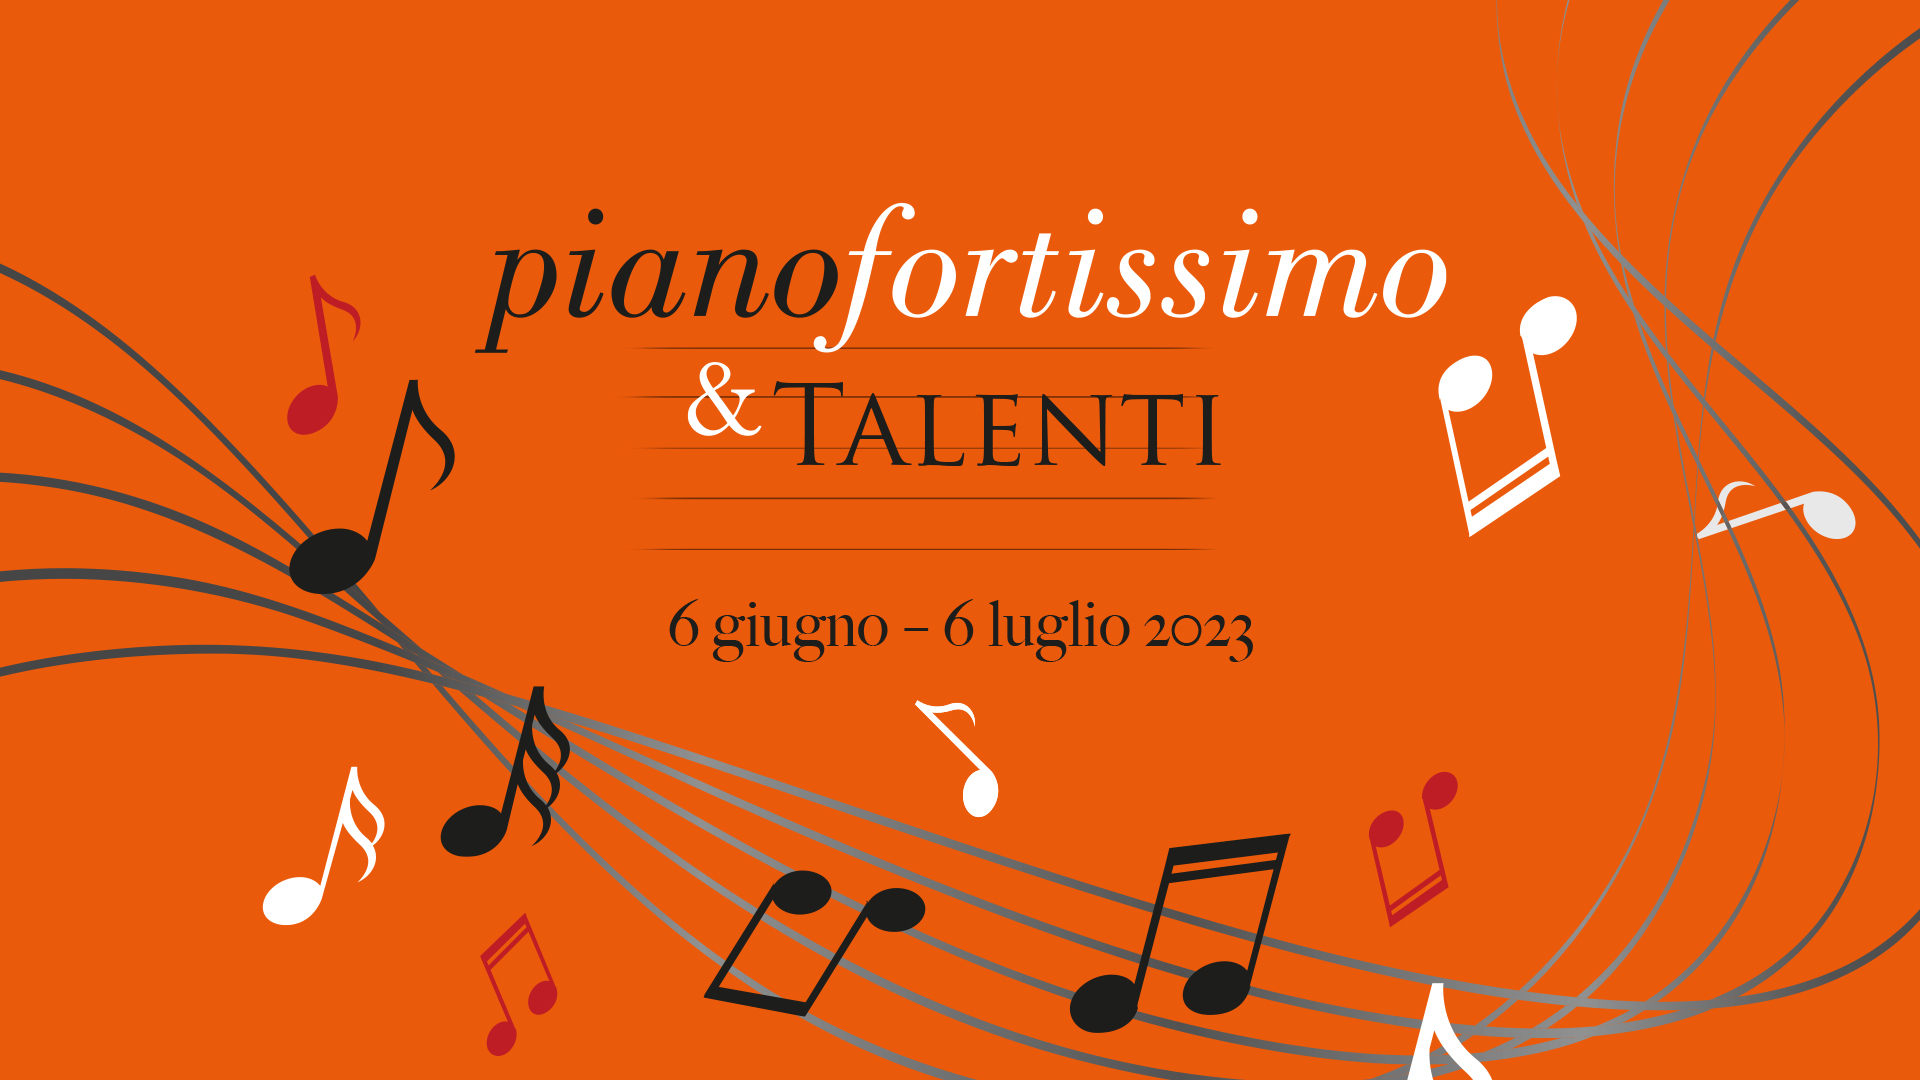 slider pianofortissimo&talenti